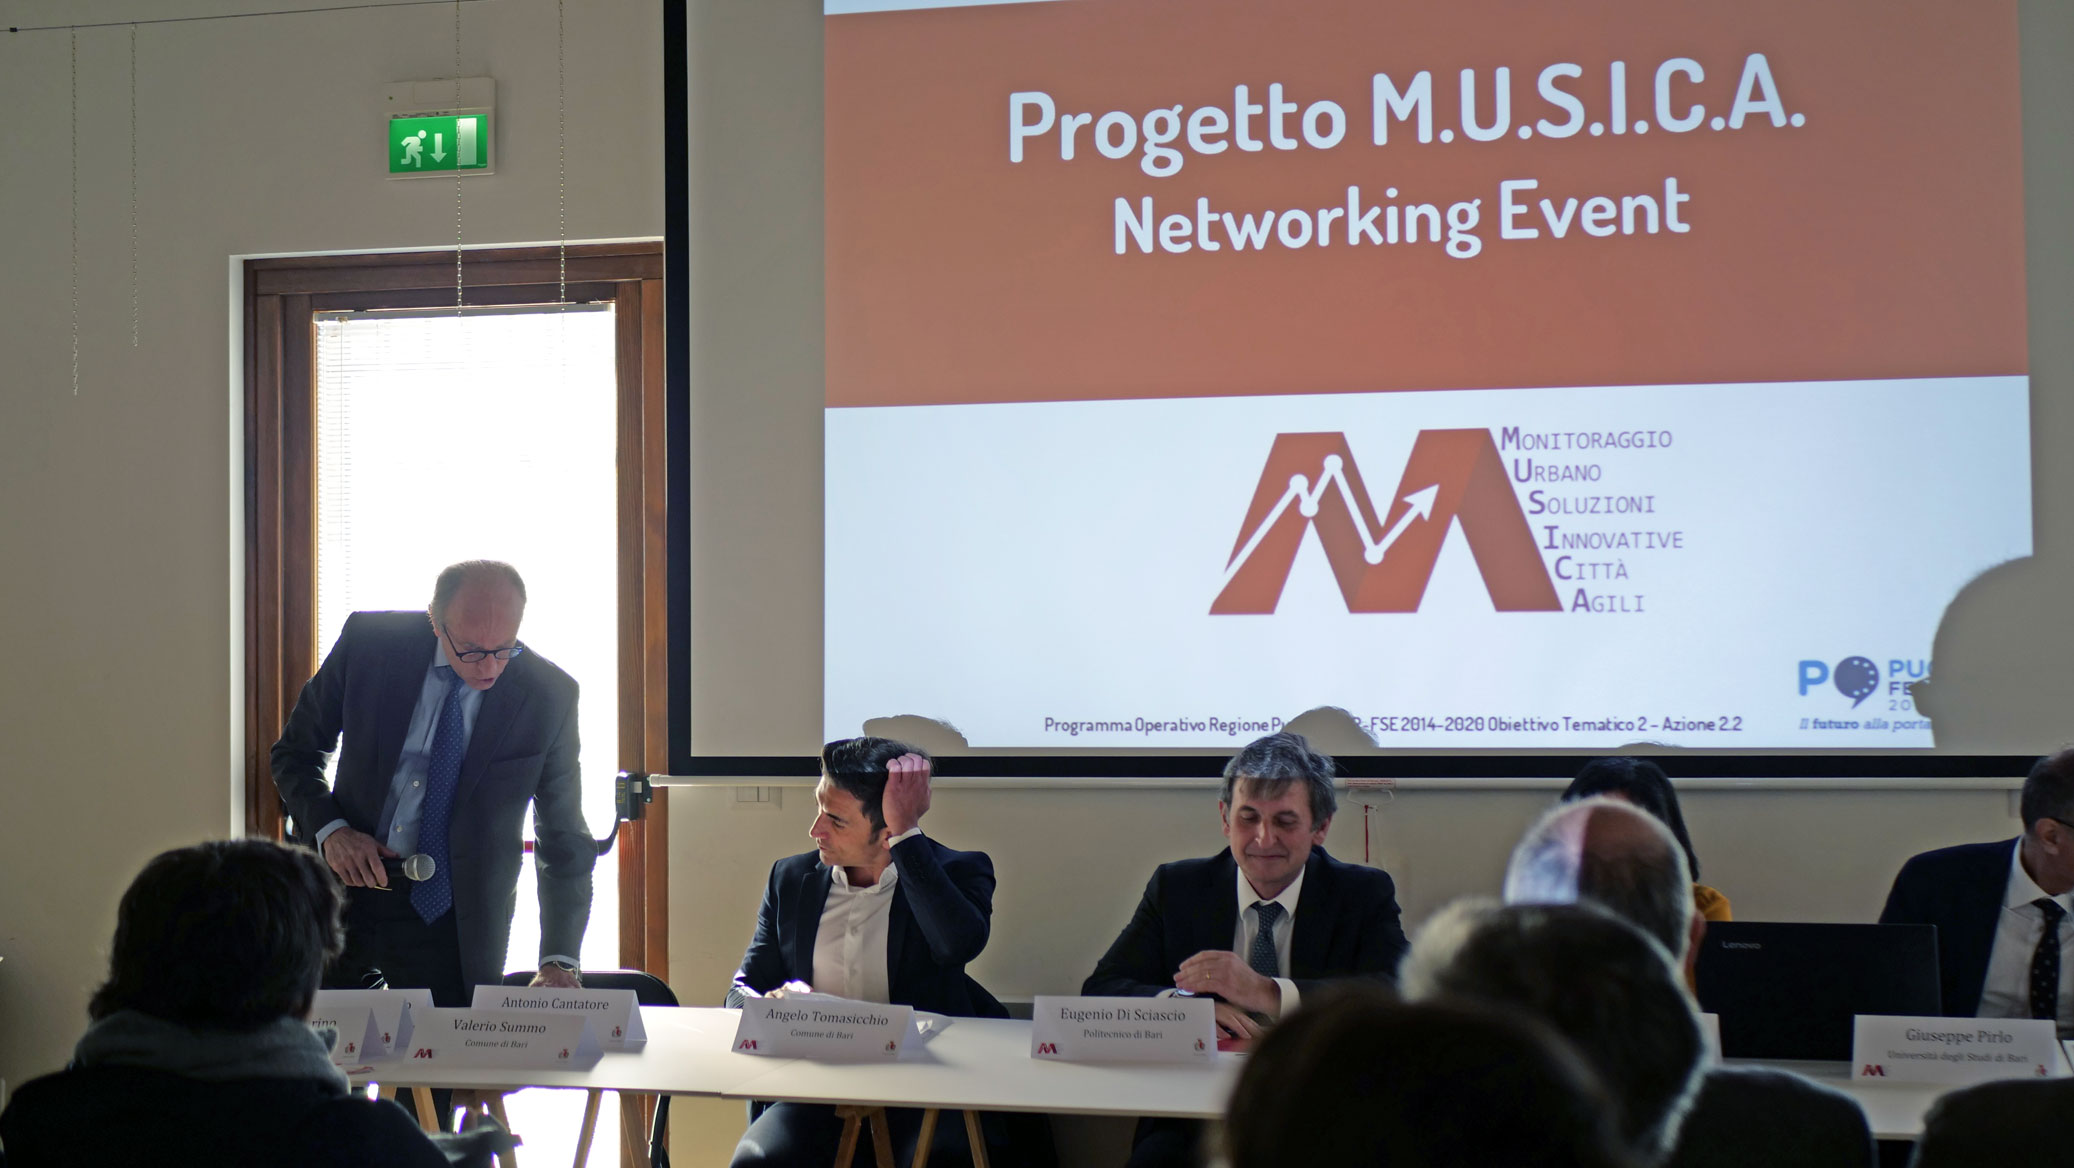 Progetto M.U.S.I.C.A. - Networking event, 15 marzo 2019